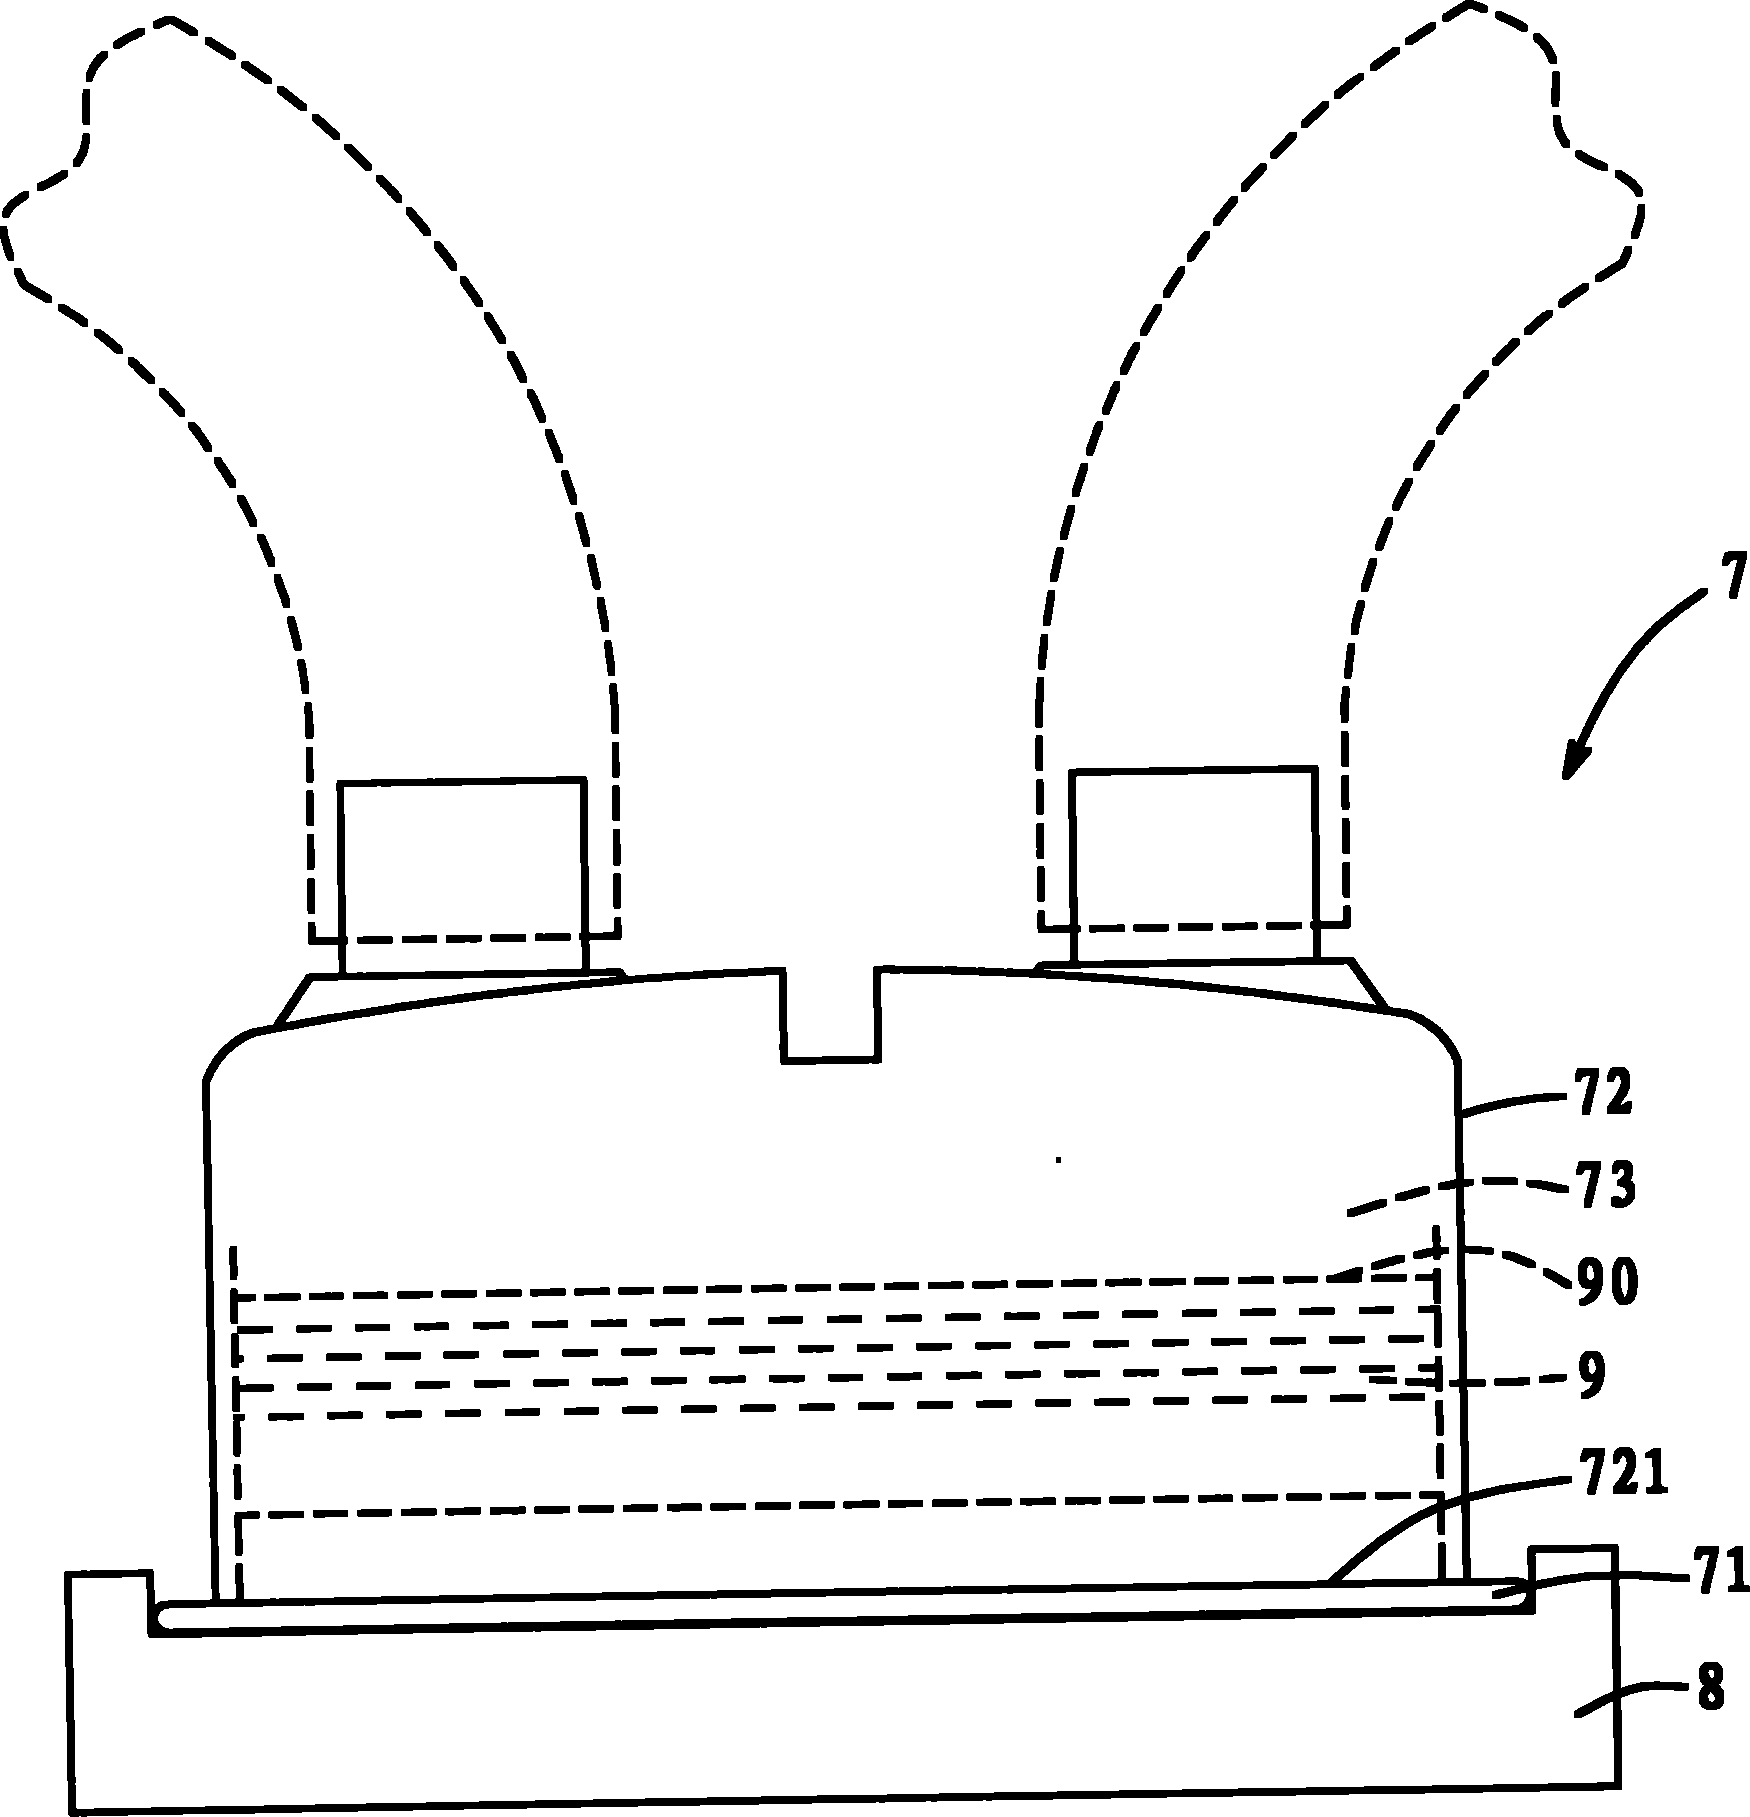 Moisture heating tank